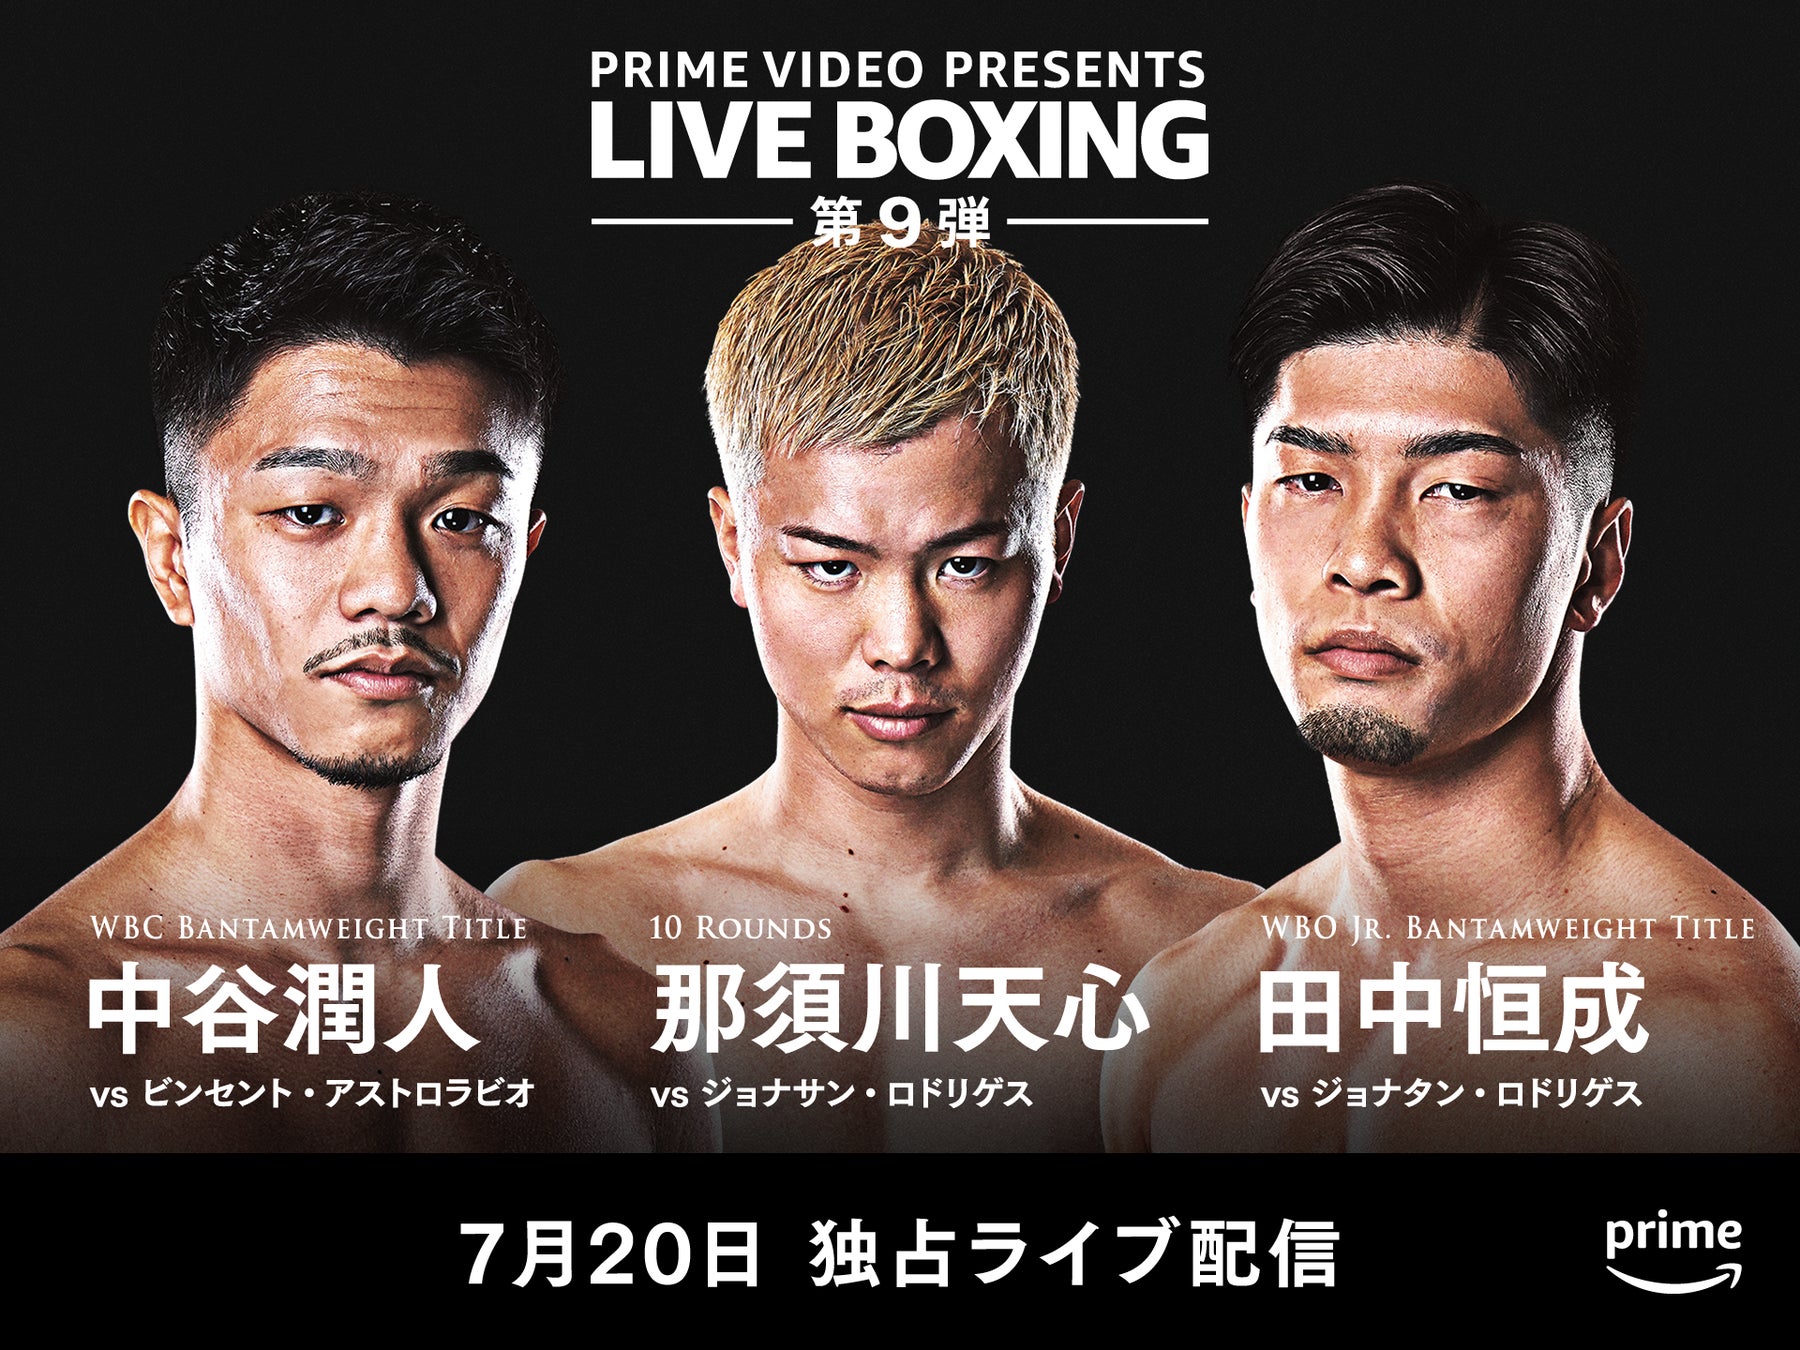 Prime Video、プロボクサー那須川天心選手とのスポンサーシップ契約を締結　那須川天心選手へのスポンサーシップを通じて、ボクシングの普及・発展を応援